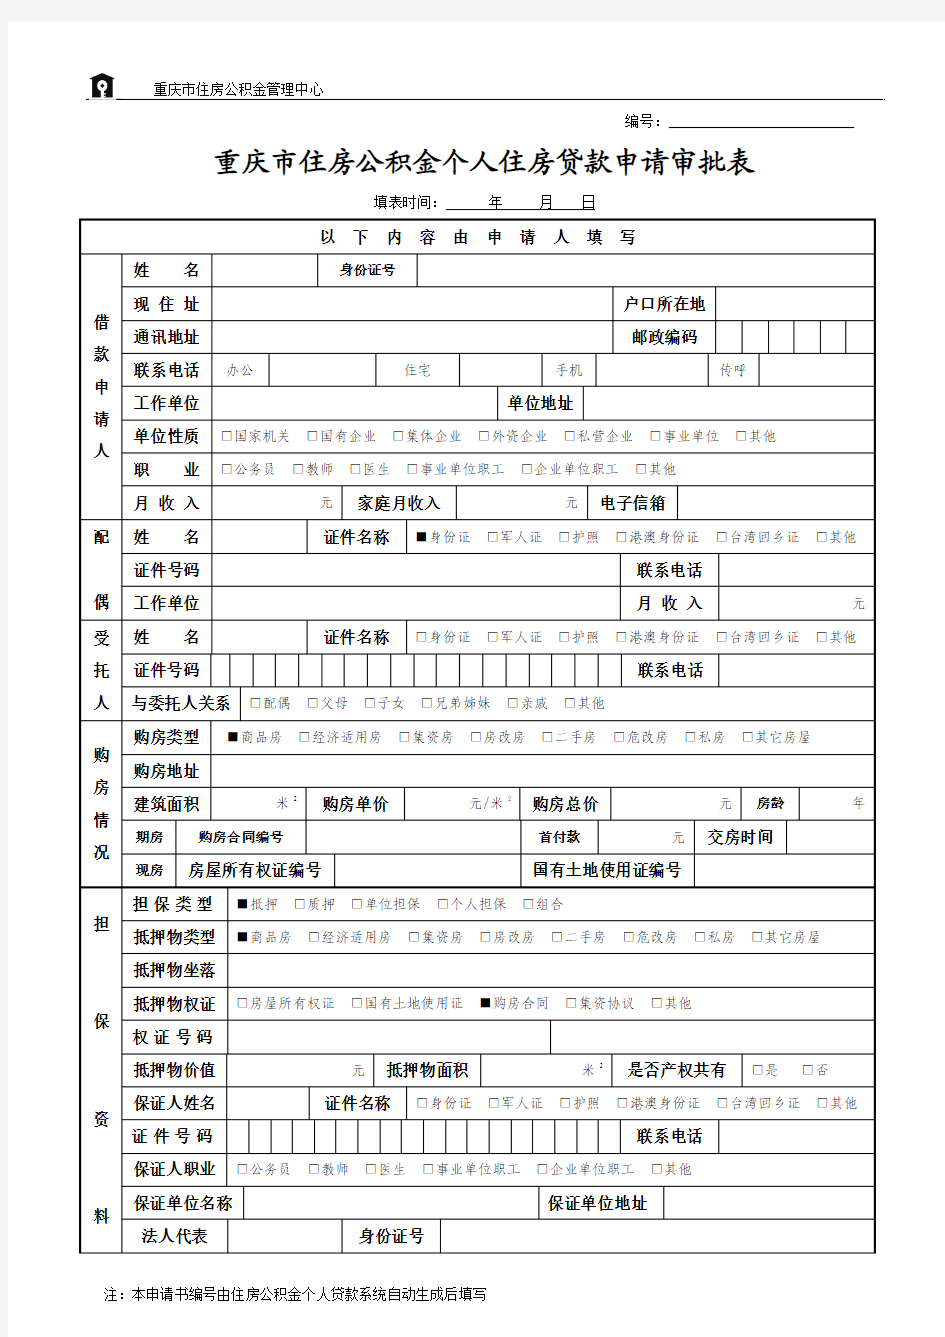 重庆市住房公积金个人住房贷款申请审批表